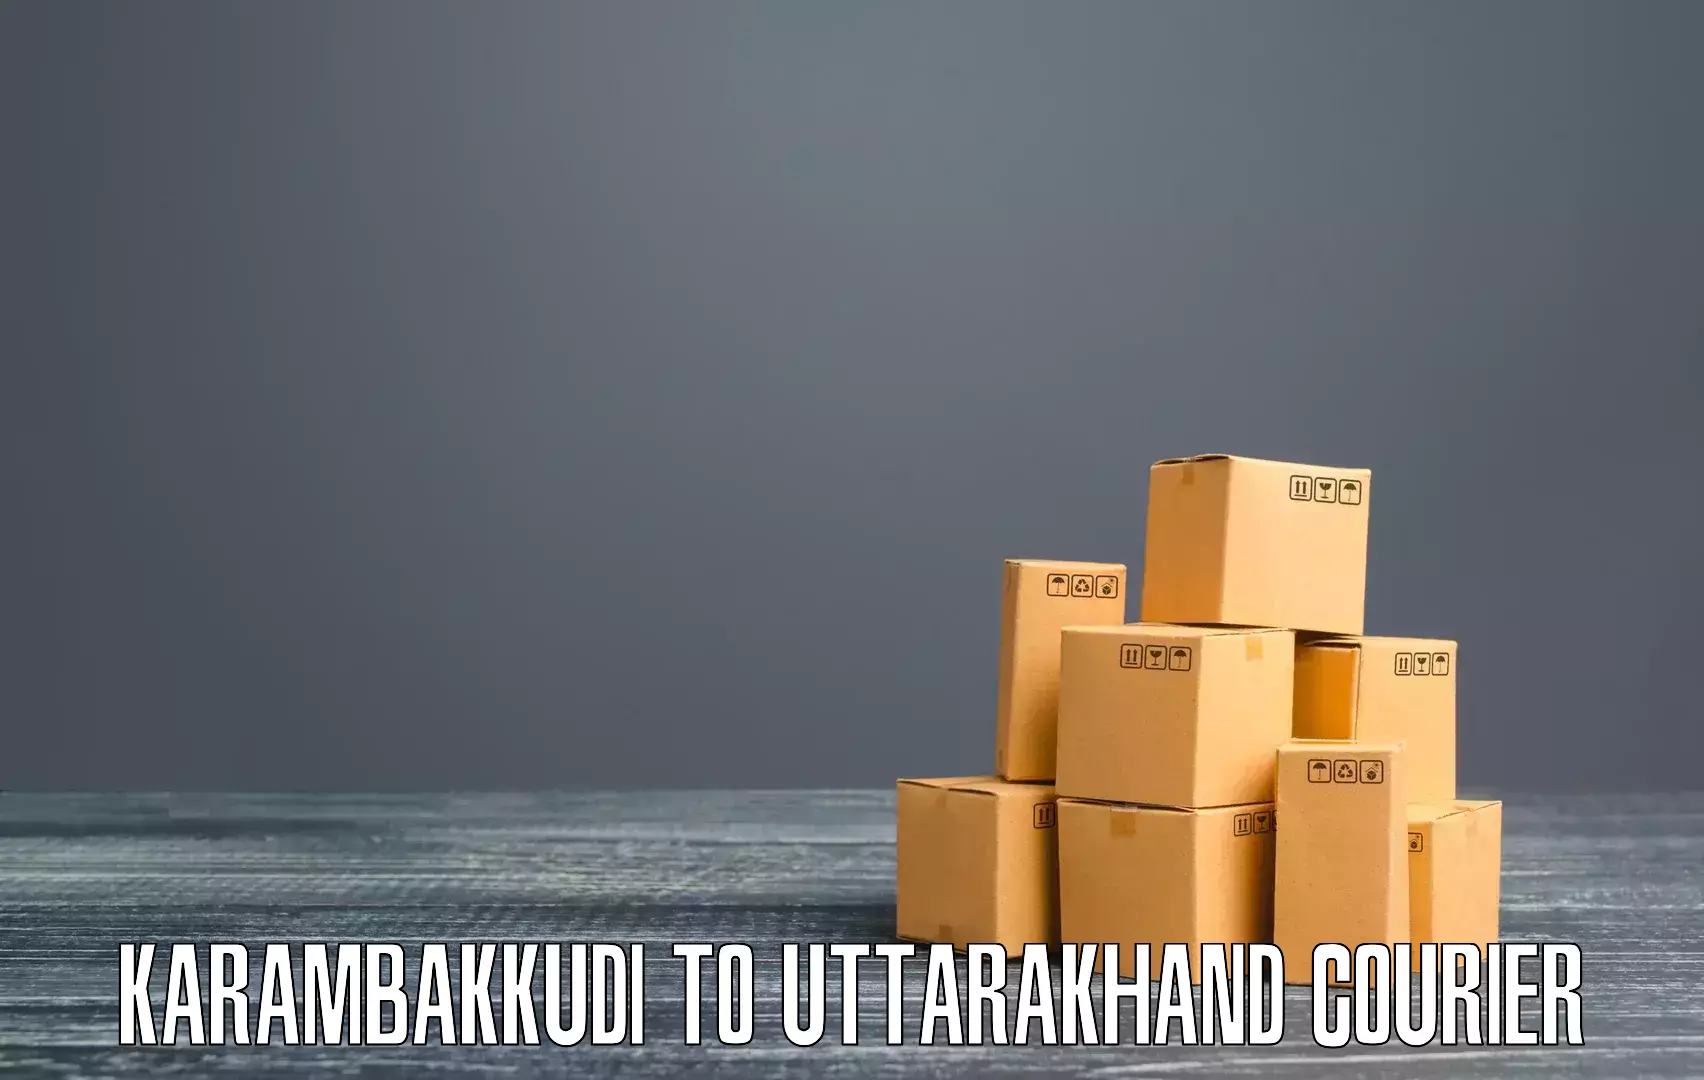 Tech-enabled shipping in Karambakkudi to Ranikhet